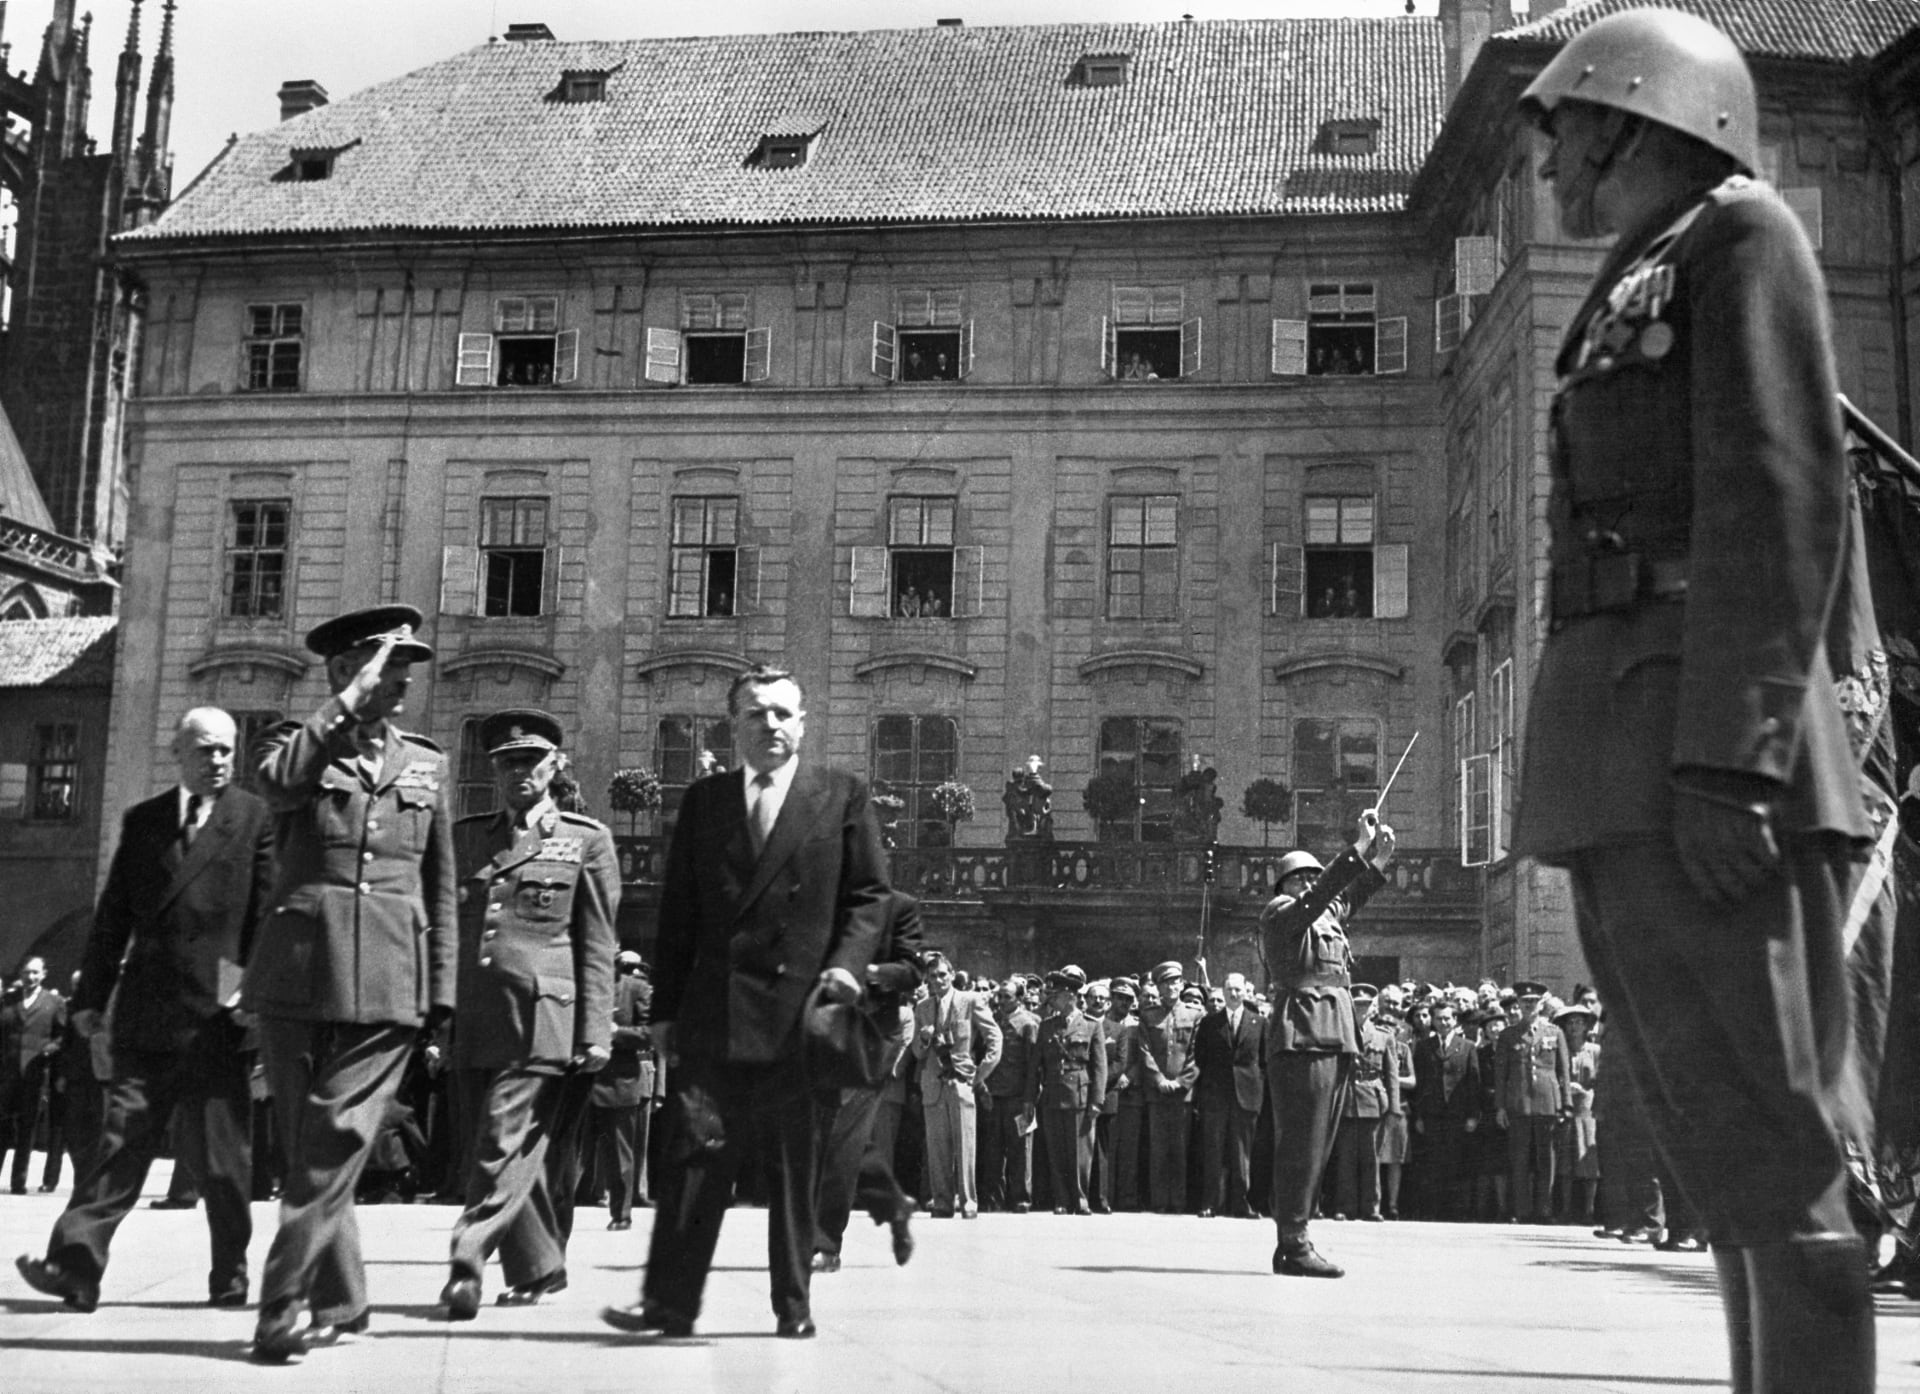 Prezident Klement Gottwald se prochází na nádvoří Pražského hradu.